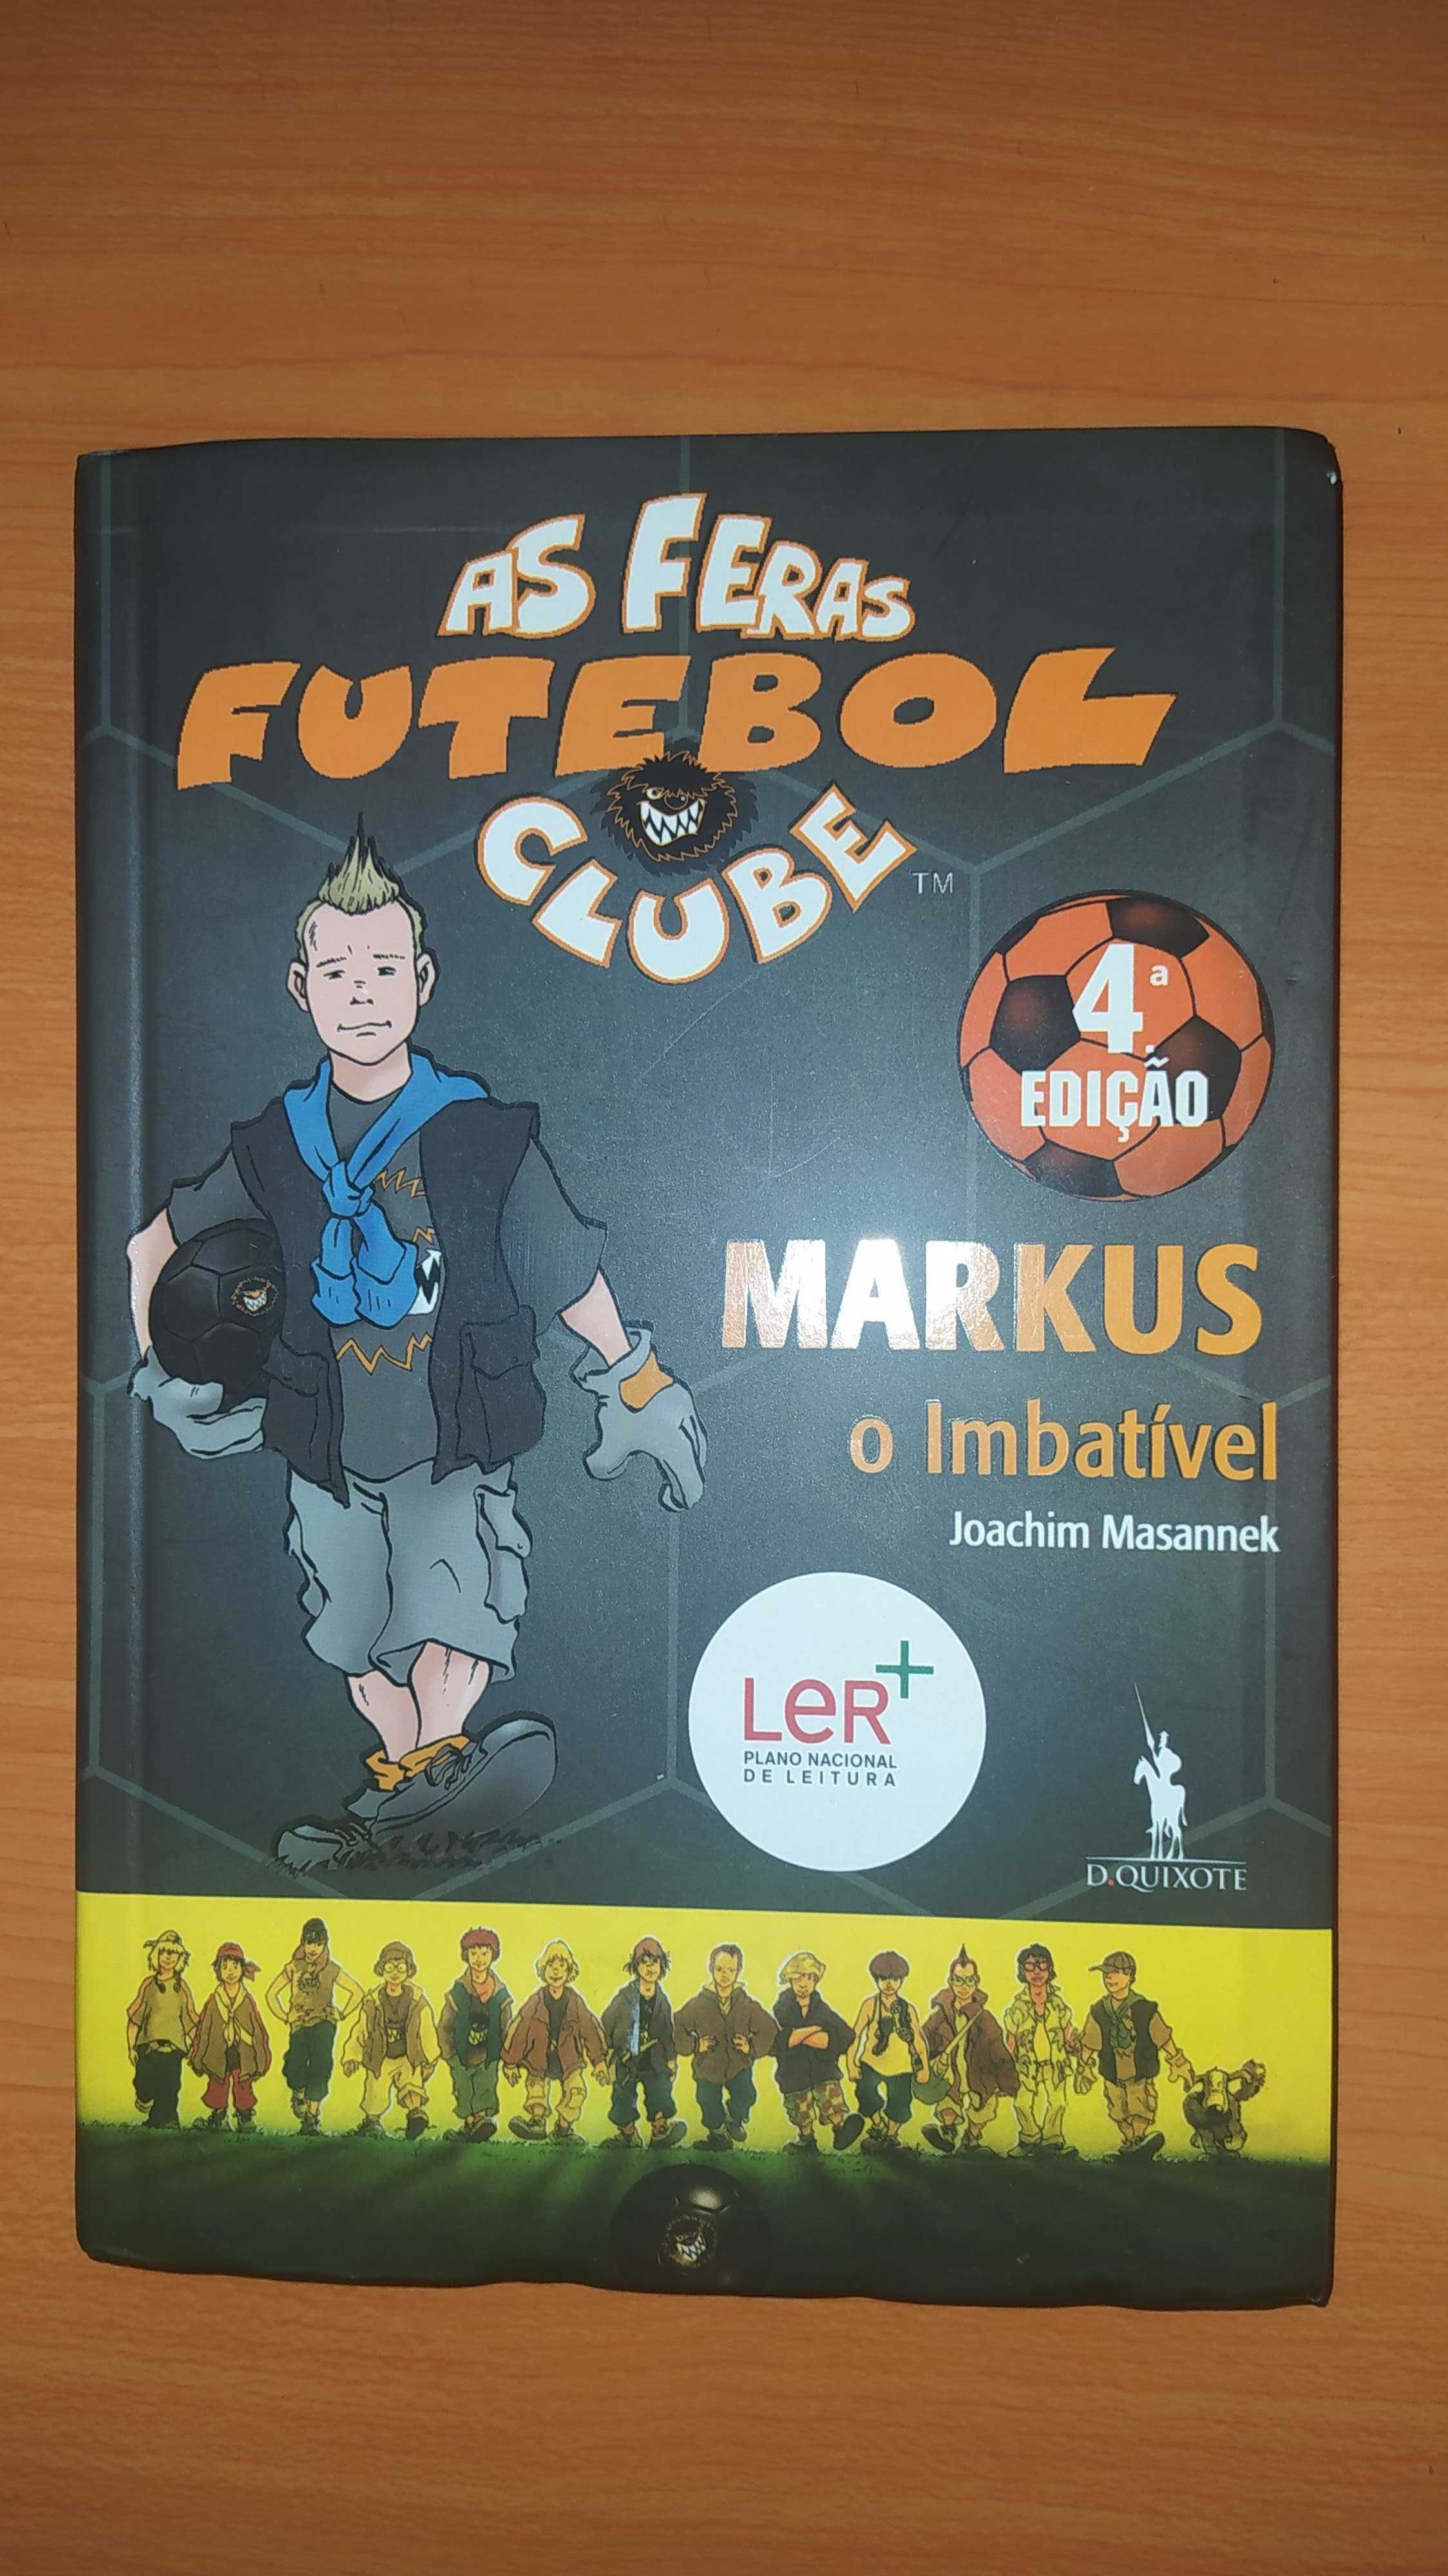 Livro "As feras futebol clube" 4º Edição MARKUS o Imbatível